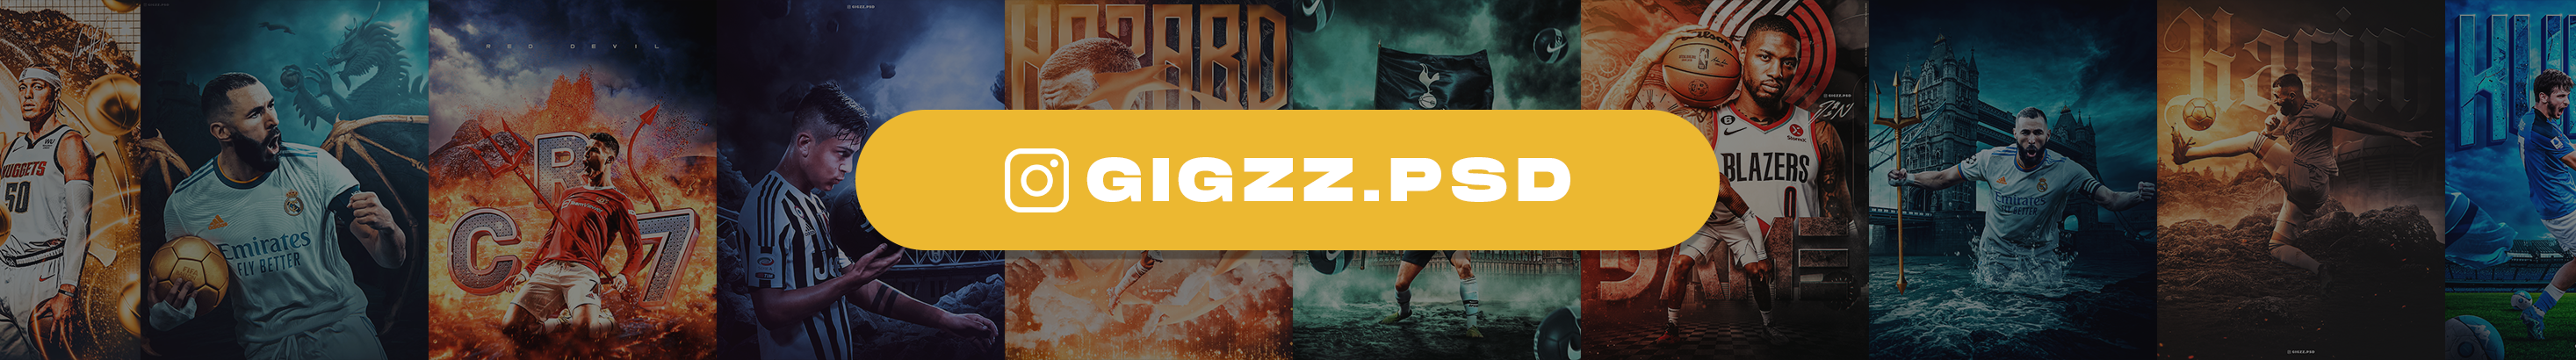 Gigi Zakaidze's profile banner